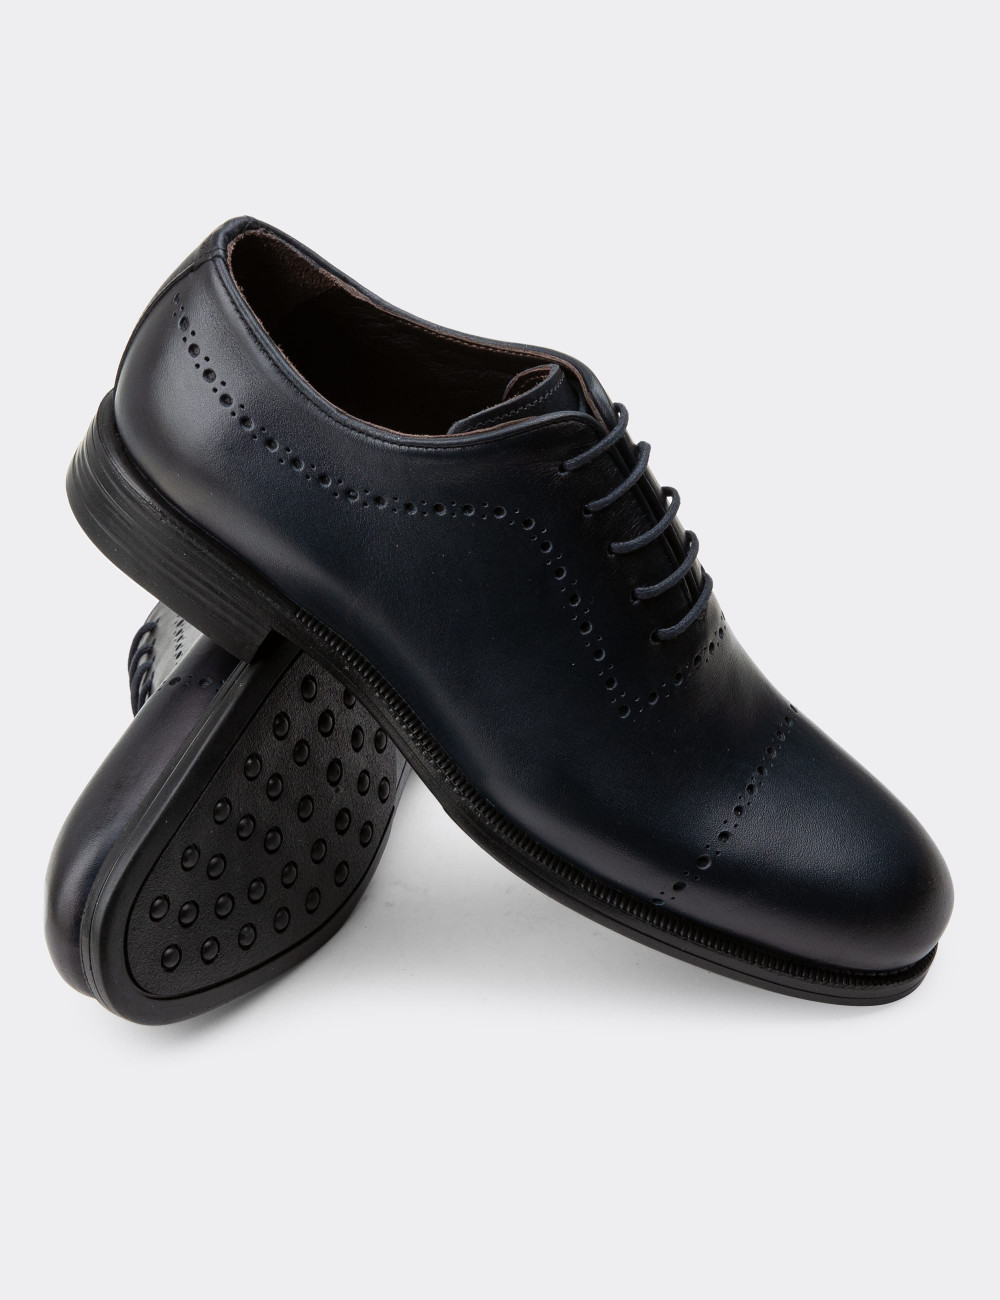 Hakiki Deri Lacivert Klasik Erkek Ayakkabı - 00491MLCVC02